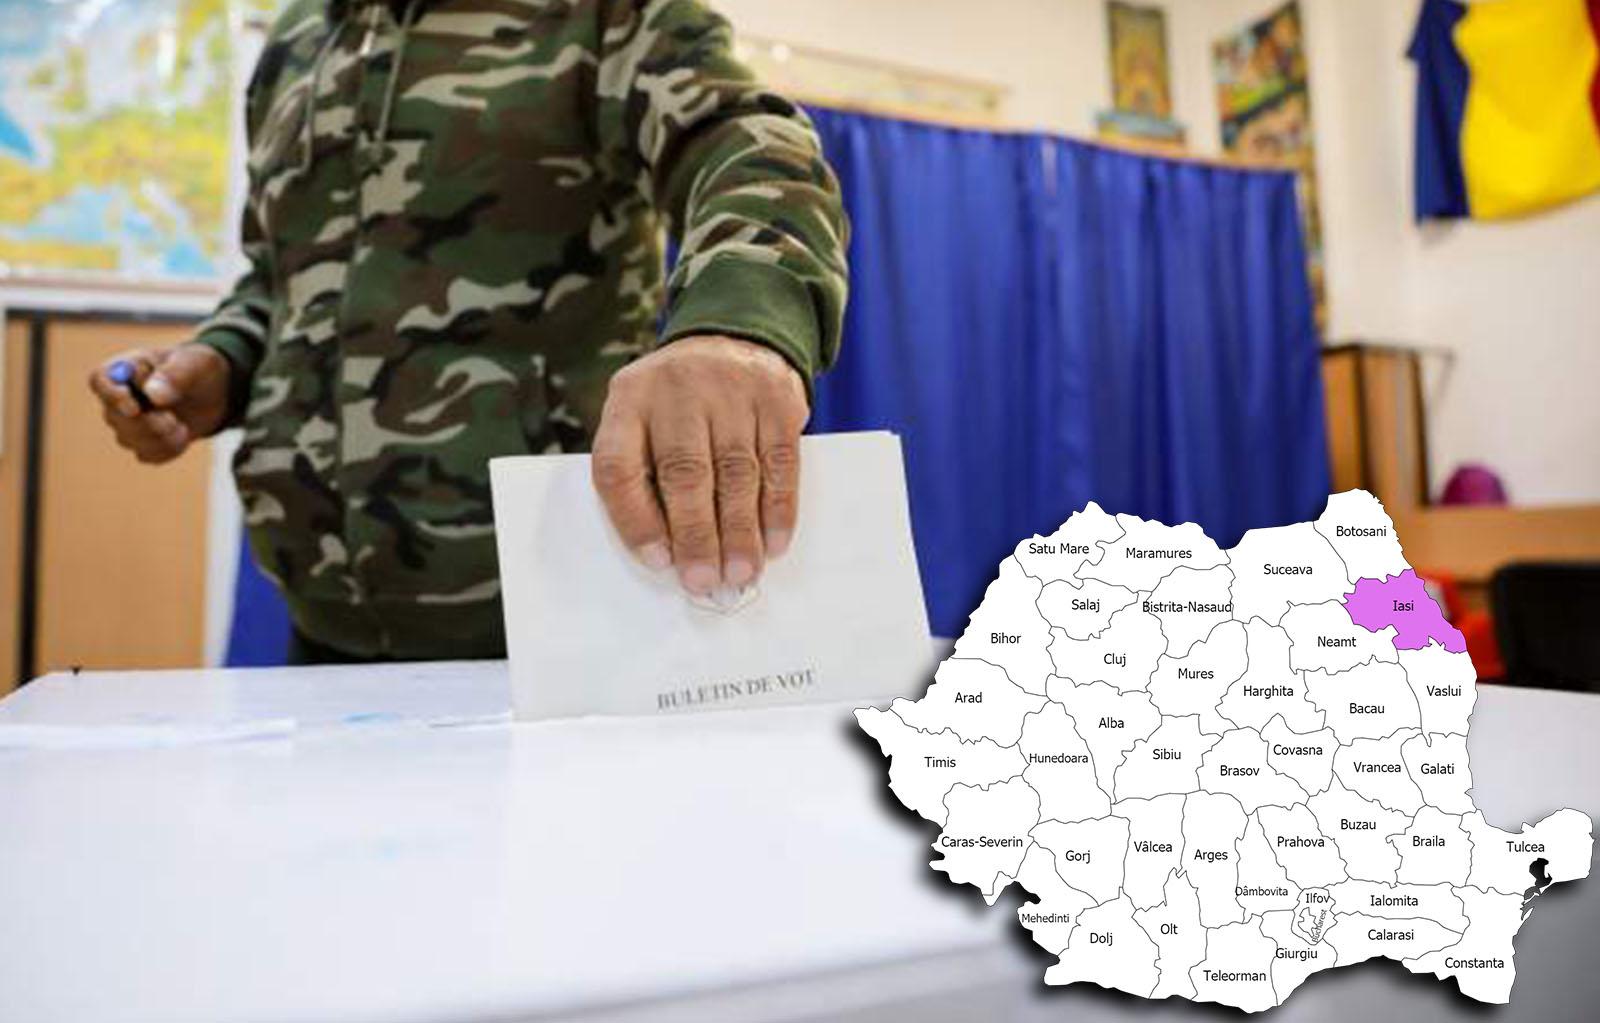 Rezultate alegeri parlamentare 2020 în județul Iași. Cine câștigă alegerile pentru Senat și Camera Deputaților